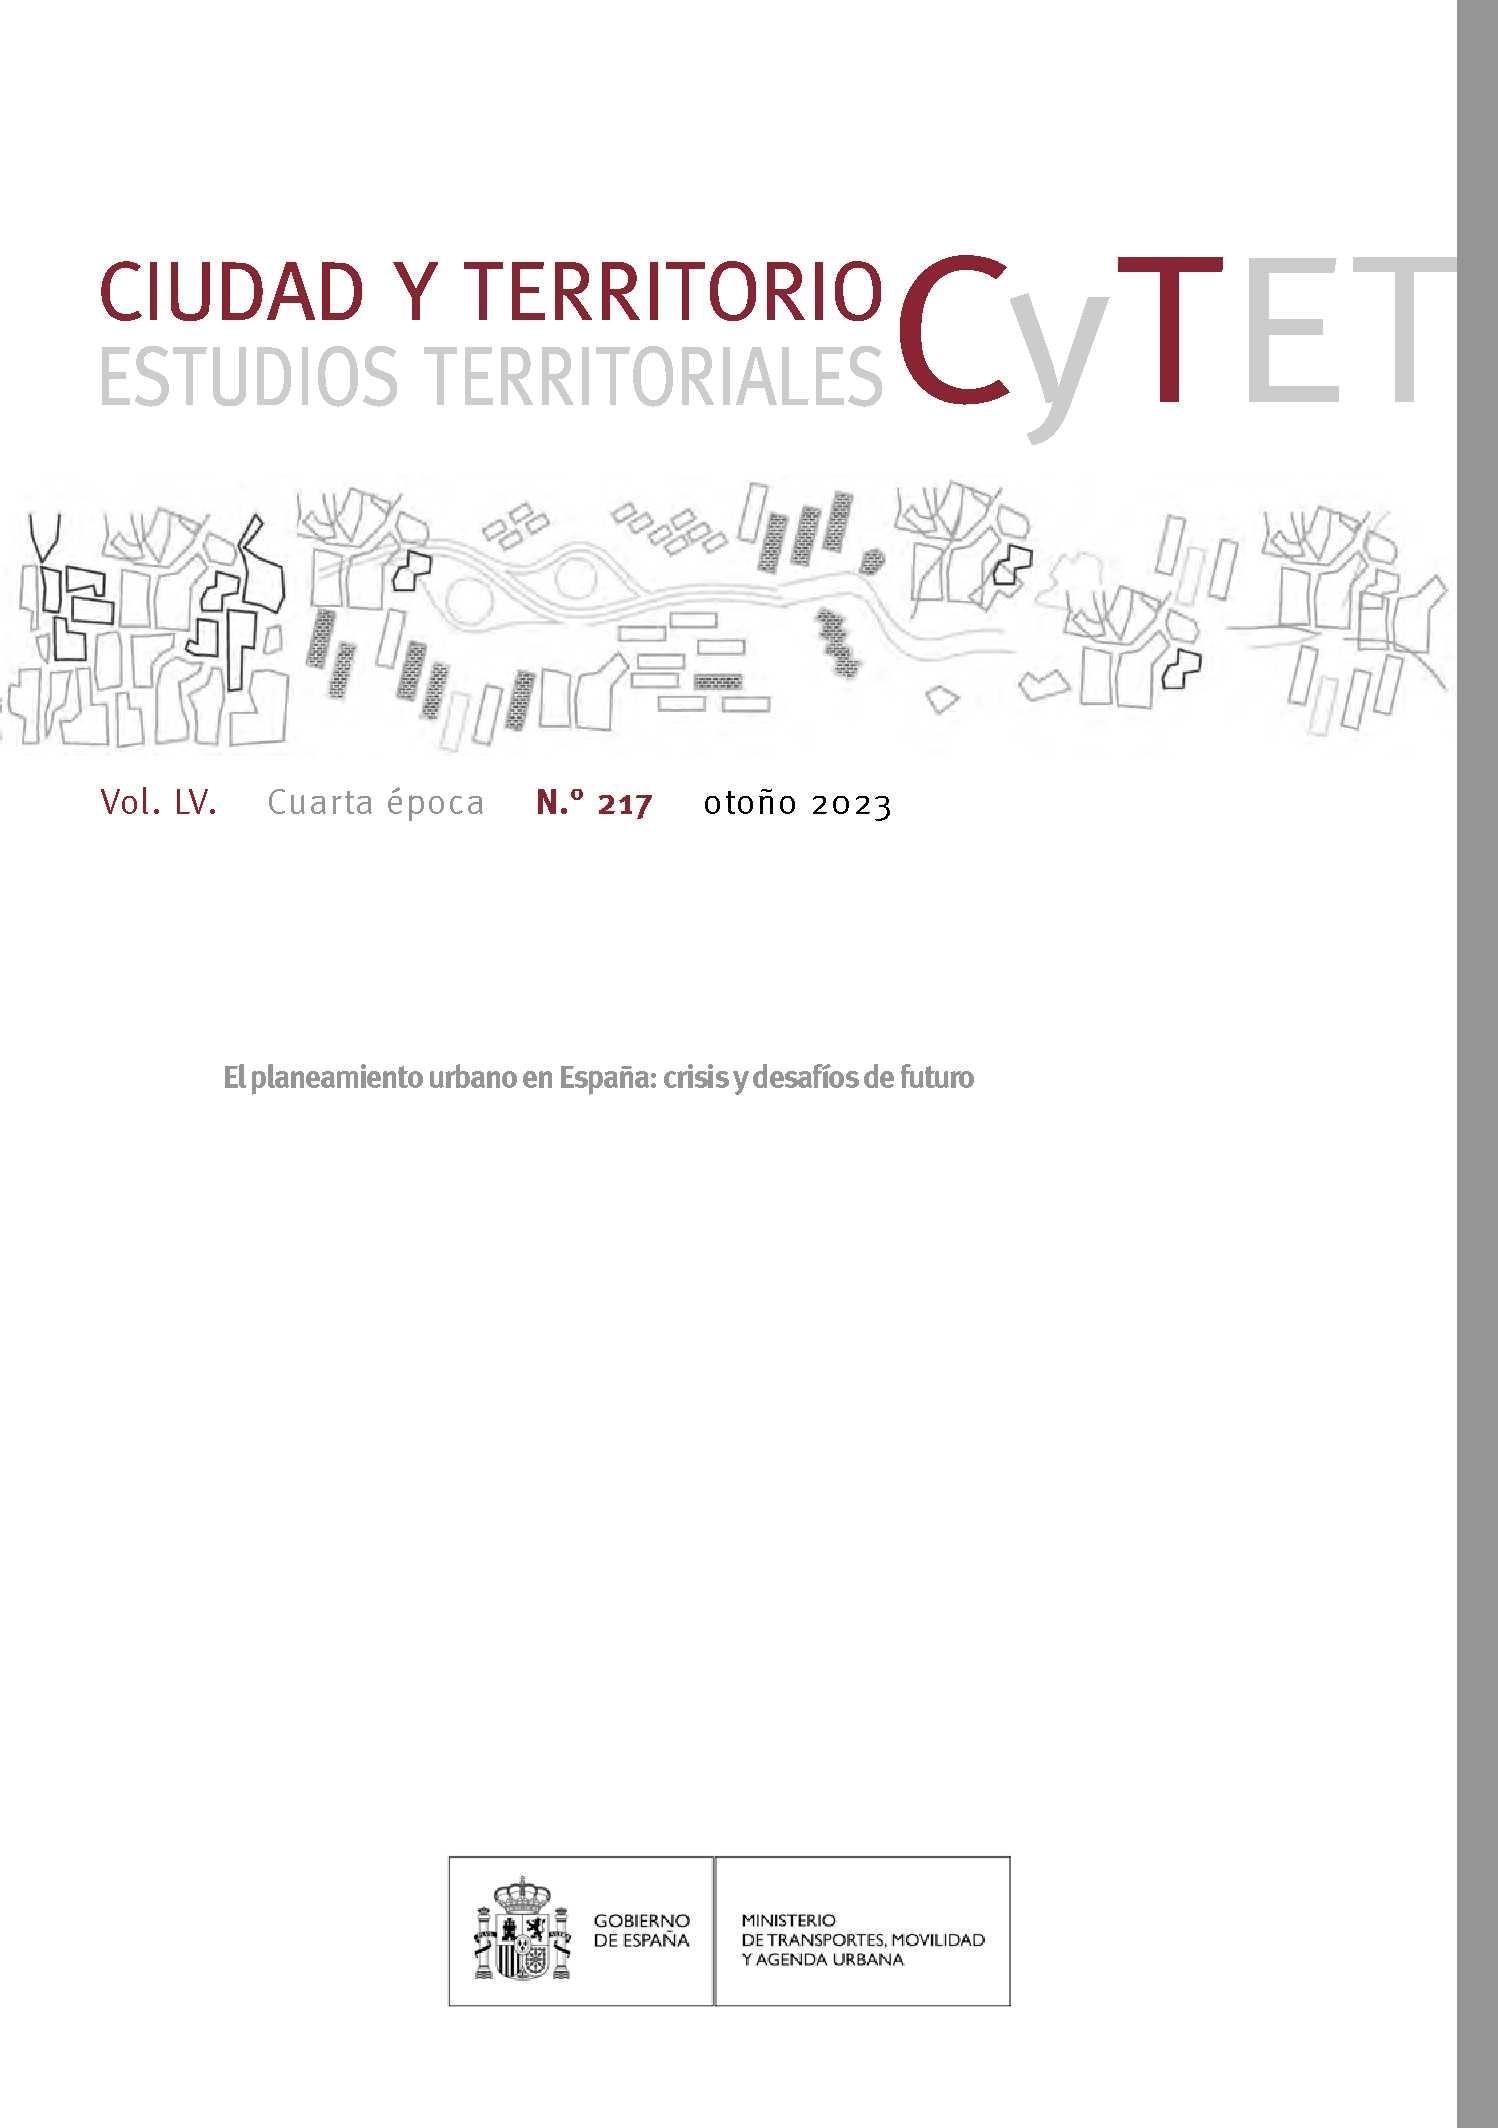 CYTET. CIUDAD Y TERRITORIO Nº 217 "EL PLANEAMIENTO URBANO EN ESPAÑA: CRISIS Y DESAFIOS DE FUTURO"